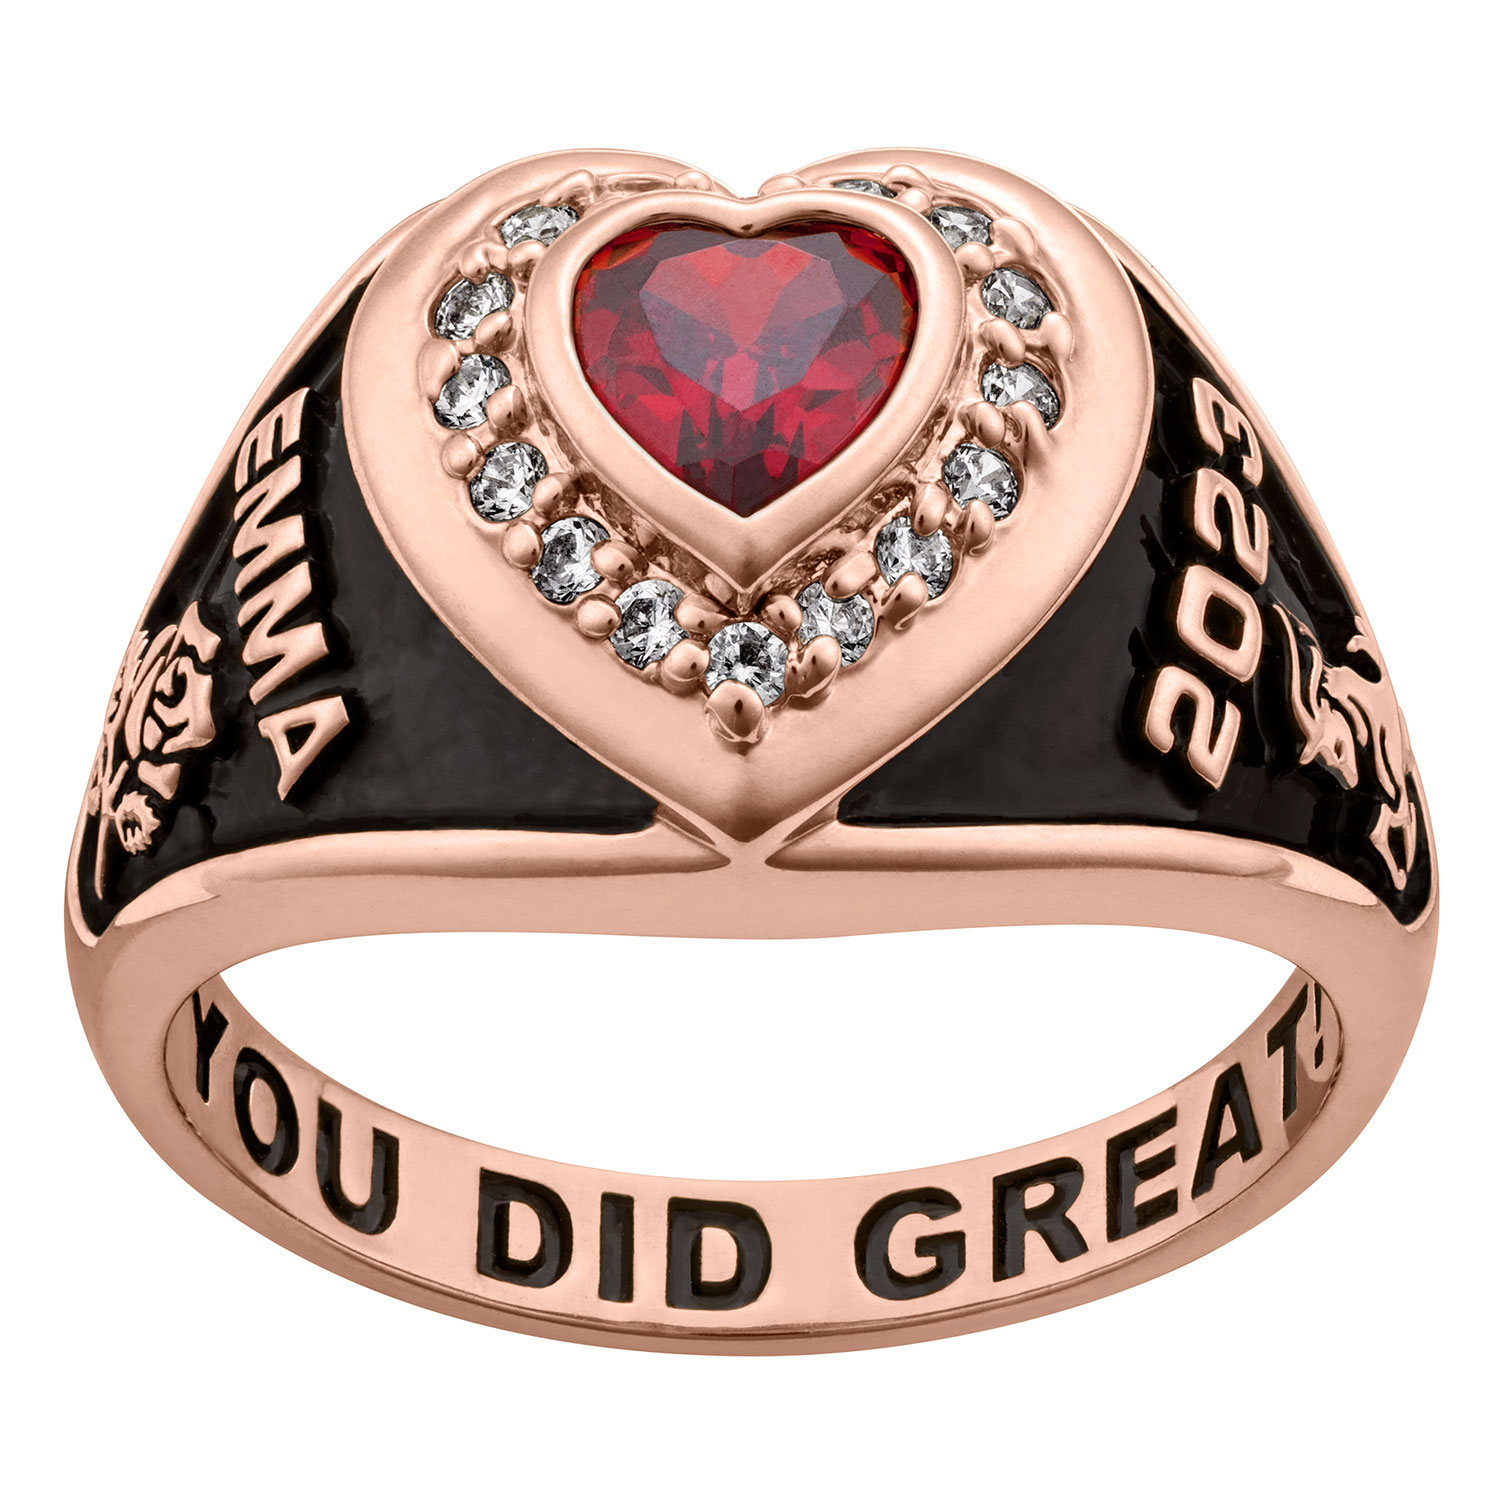 Ladies' Class Ring in Rose Gold Over Celebrium 